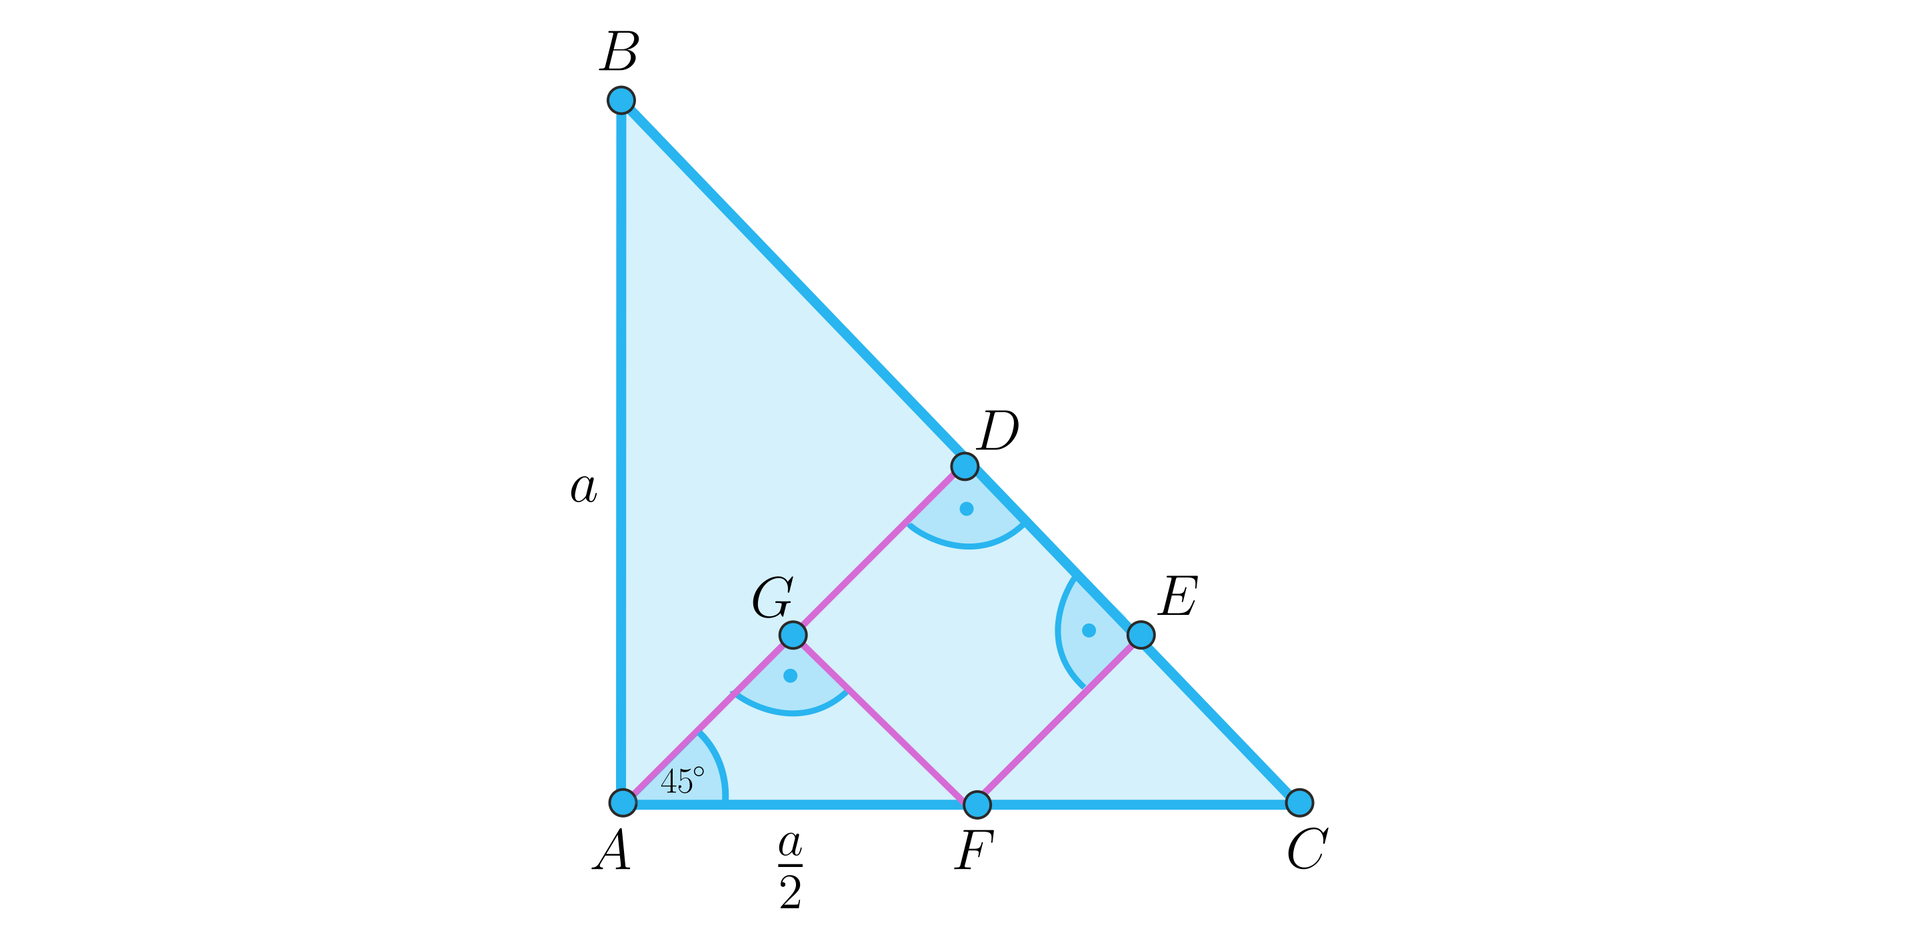 Ilustracja przedstawia zamalowany wewnątrz trójkąt prostokątny A B C. Przy wierzchołku A znajduje się nieoznaczony kąt prosty. Z wierzchołka A poprowadzono wysokość A D na przeciwprostokątną B C i przy wierzchołku D oznaczono kąt prosty. Na podstawie A C zaznaczono punkt F, z którego poprowadzono równoległy do wysokości odcinek F E, gdzie punkt E leży na przeciwprostokątnej B C. Przy wierzchołku E zaznaczono kąt prosty między odcinkiem F E a przeciwprostokątną B C. Na wysokości A D zaznaczono punkt G. Z punktu G poprowadzono odcinek do punktu F. Odcinek G F jest równoległy do przeciwprostokątnej B C. Kąt A G F jest kątem prostym. Kąt G A F jest kątem o mierze 45 stopni. Pionowy bok trójkąta A B opisano małą literą a, natomiast odcinek A F opisano jako a drugich.